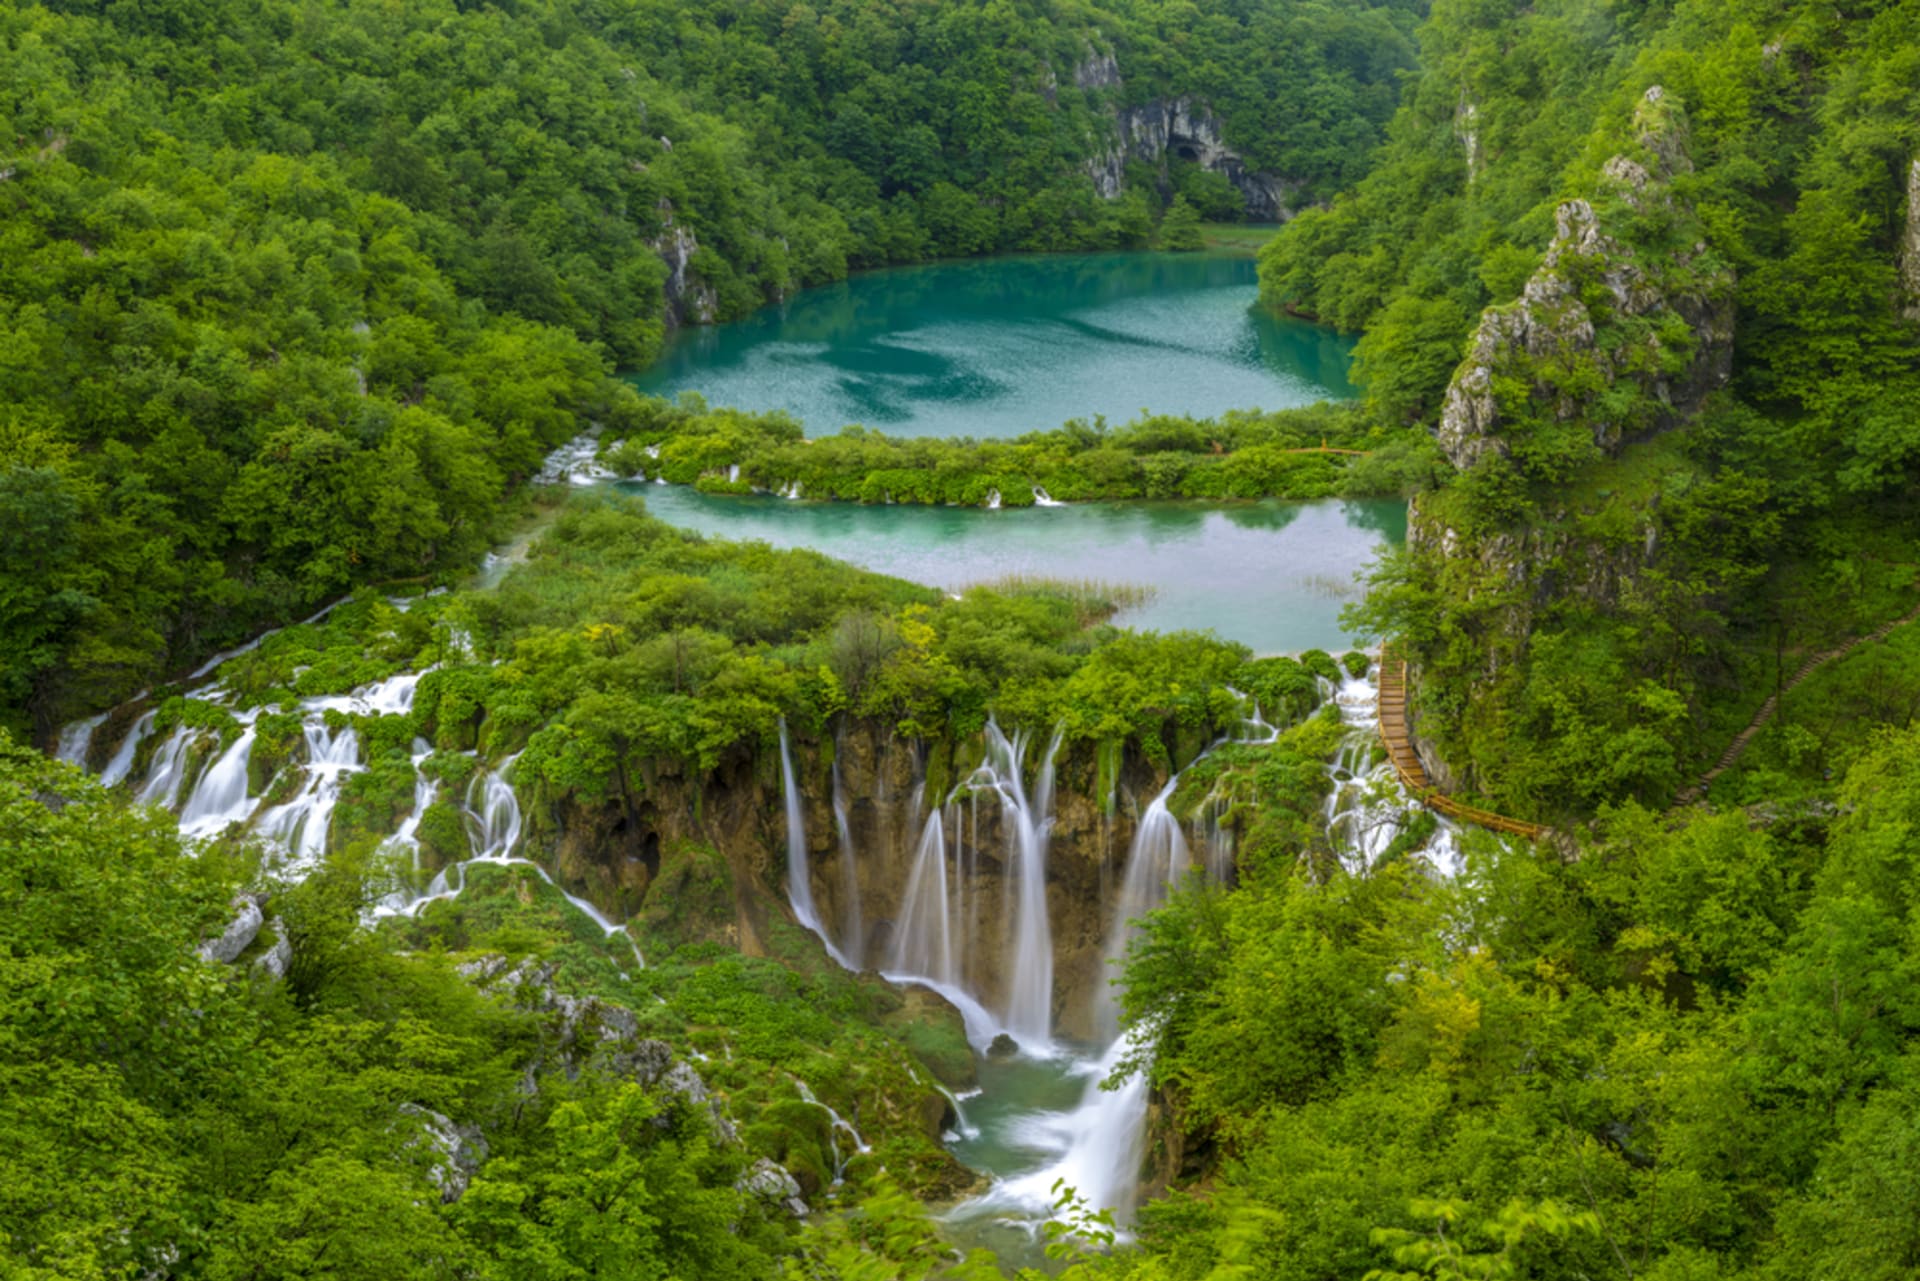 Říčka Plitvice, která dala jezerní soustavě jméno. nespojuje žádná jezera, ale spadá vysokým vodopádem zboku do kaňonu pod nejníže položeným jezírkem